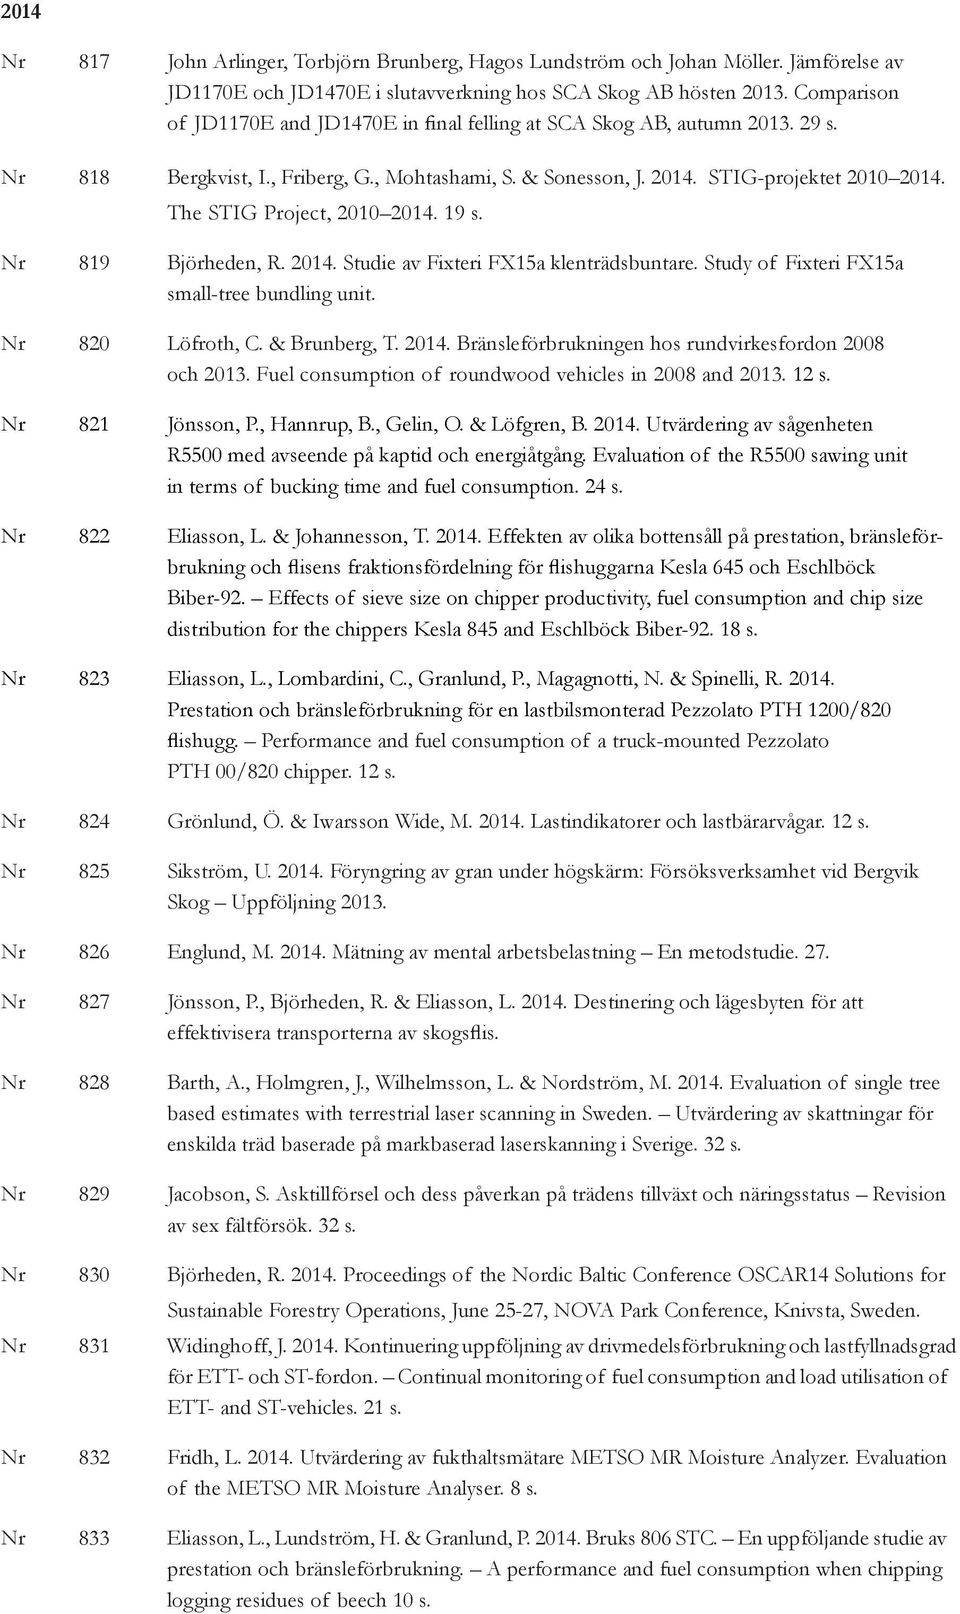 The STIG Project, 2010 2014. 19 s. Nr 819 Björheden, R. 2014. Studie av Fixteri FX15a klenträdsbuntare. Study of Fixteri FX15a small-tree bundling unit. Nr 820 Löfroth, C. & Brunberg, T. 2014. Bränsleförbrukningen hos rundvirkesfordon 2008 och 2013.